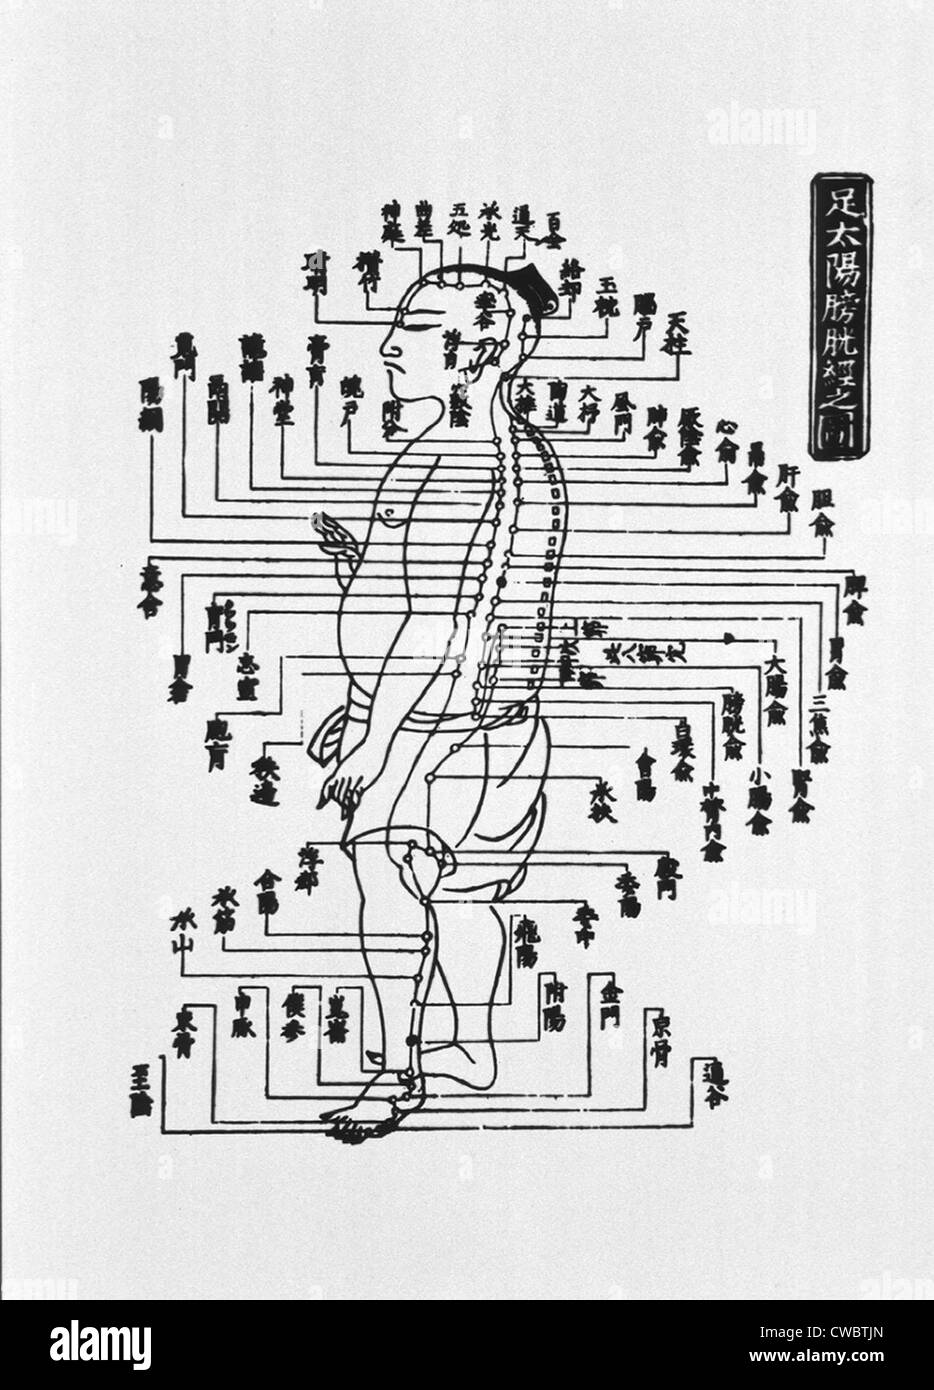 Menschliche Abbildung im linken Profil mit Akupunkturpunkten entlang der gesamten Länge des Körpers werden angezeigt.  Abbildung Stockfoto